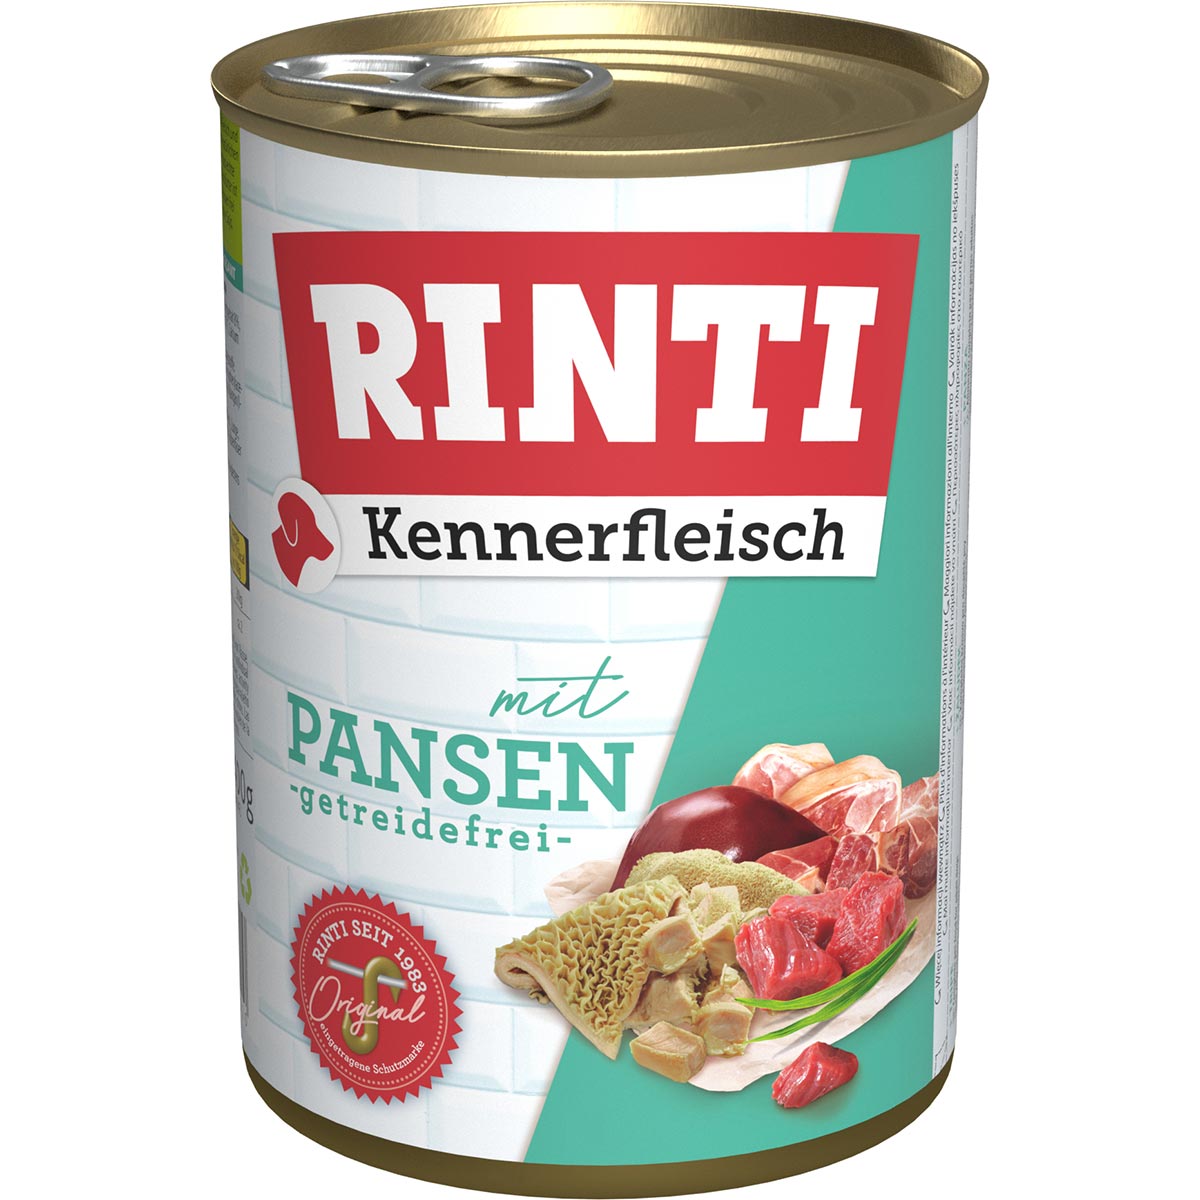 Rinti Kennerfleisch mit Pansen 24x400g von Rinti